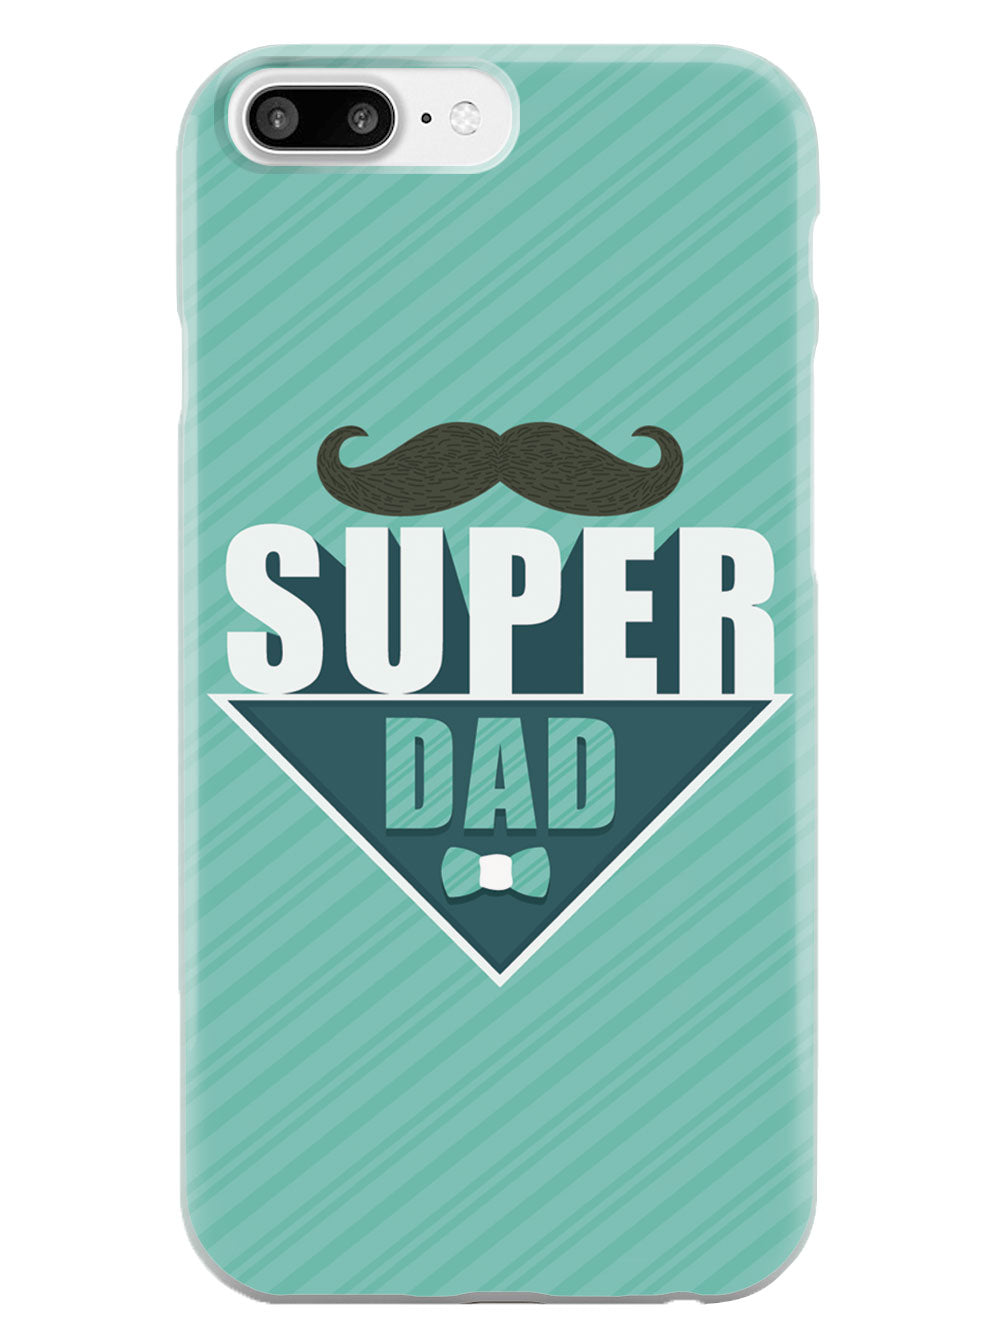 Super Dad - White Case